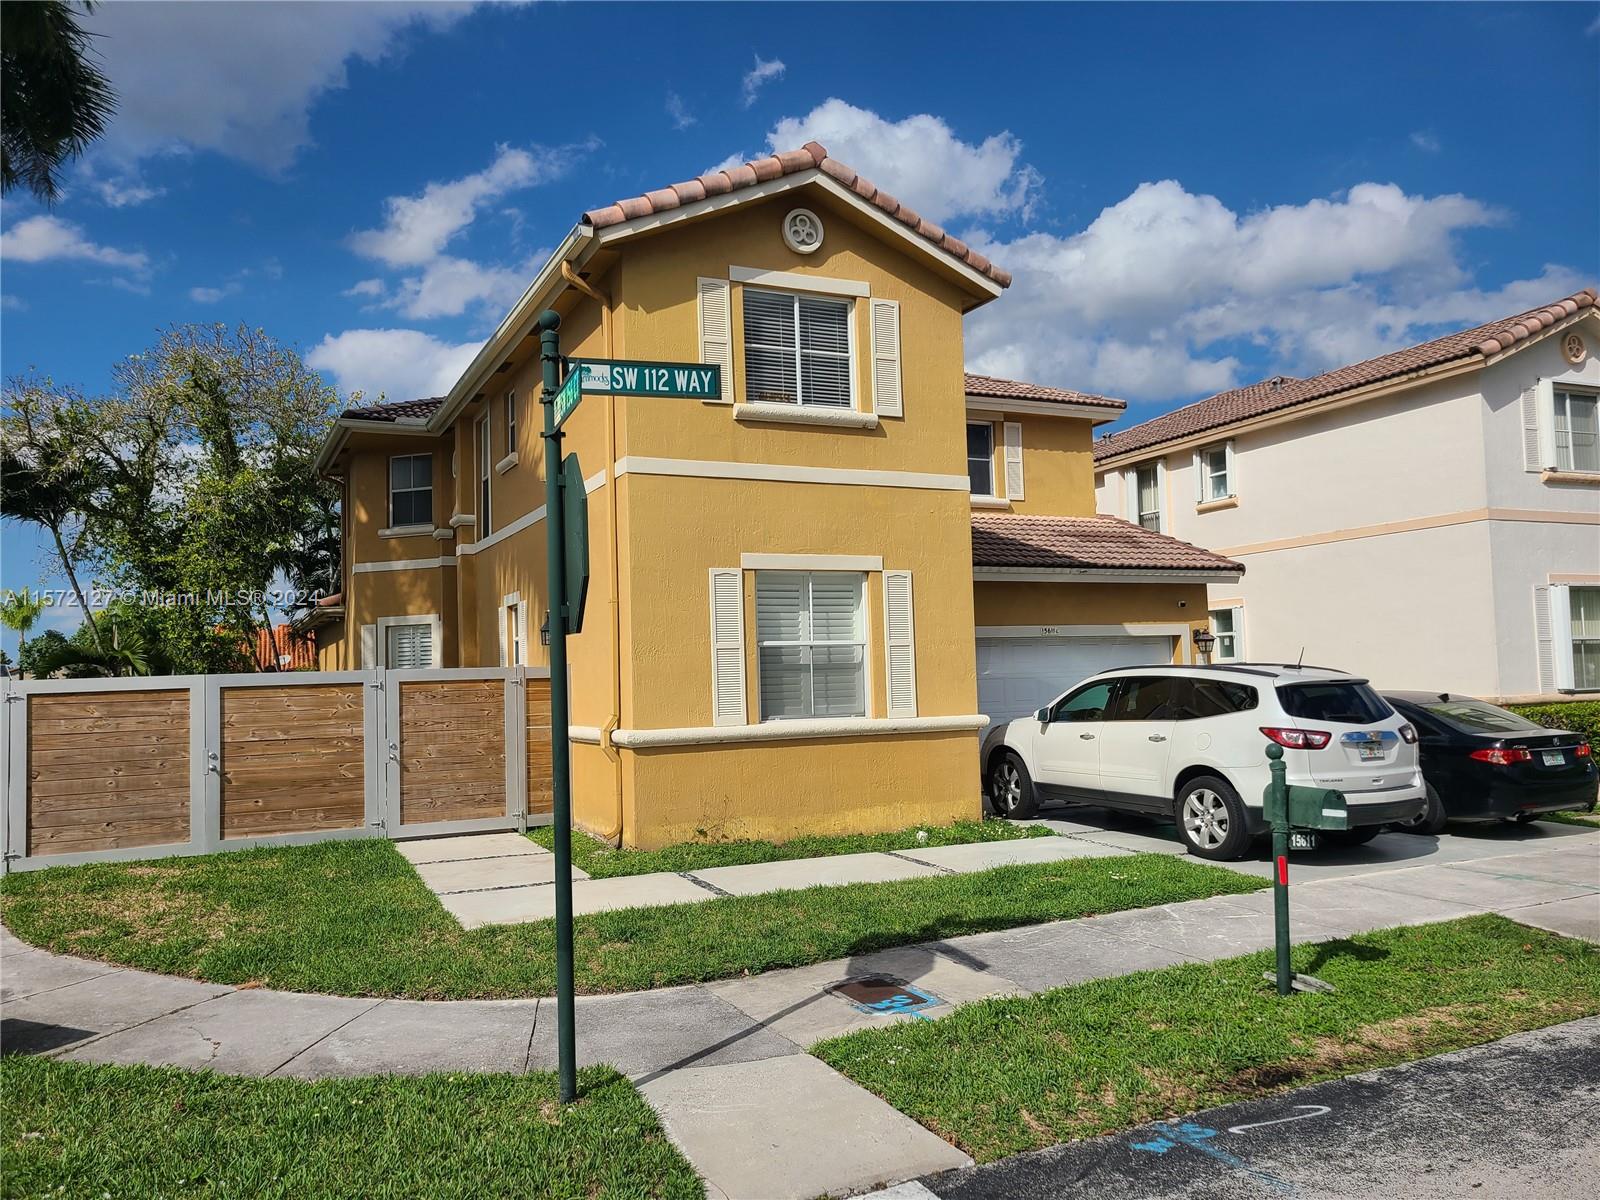 Property for Sale at 15611 Sw 112th Way Way, Miami, Broward County, Florida - Bedrooms: 4 
Bathrooms: 3  - $650,000